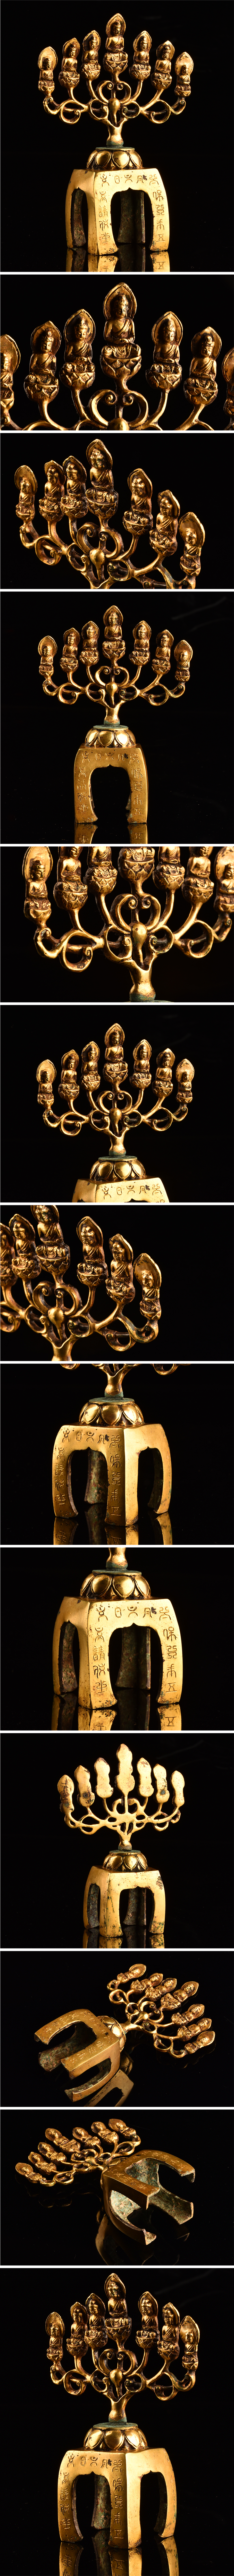 即納最新作仏教美術 中国 鍍金銅仏像 高16cm TF986 仏像